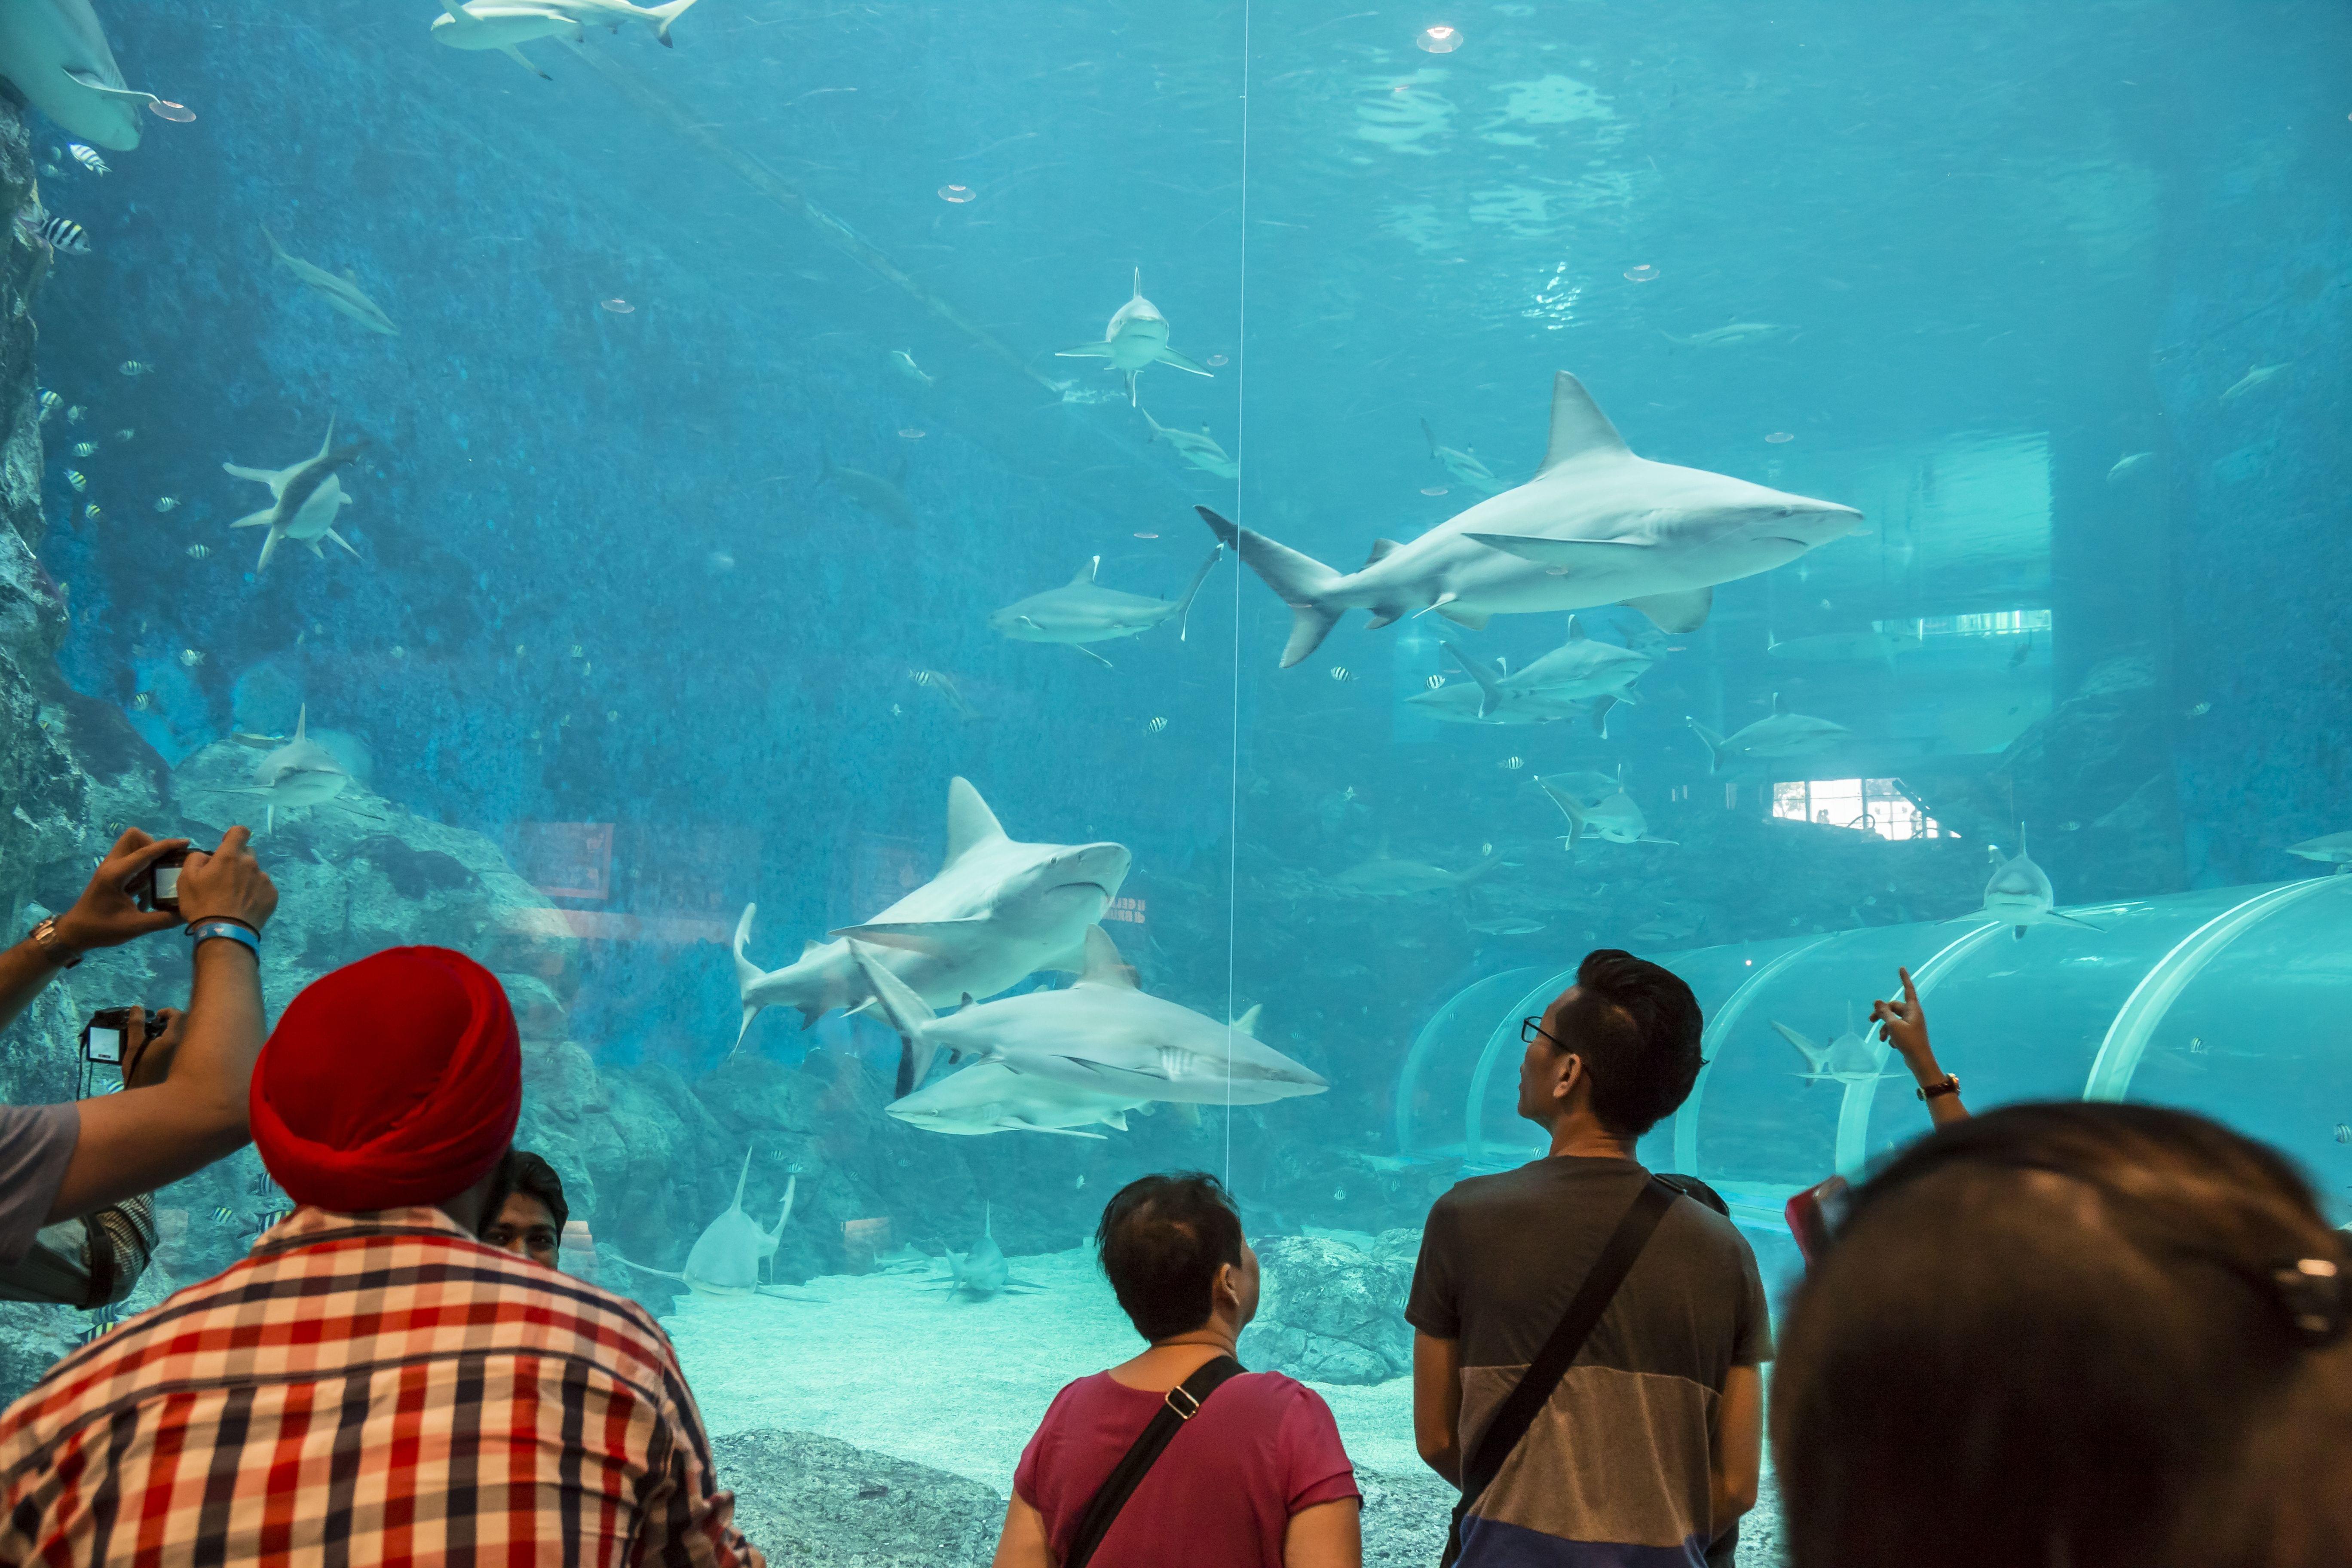 Plan Your Visit to S.E.A Aquarium